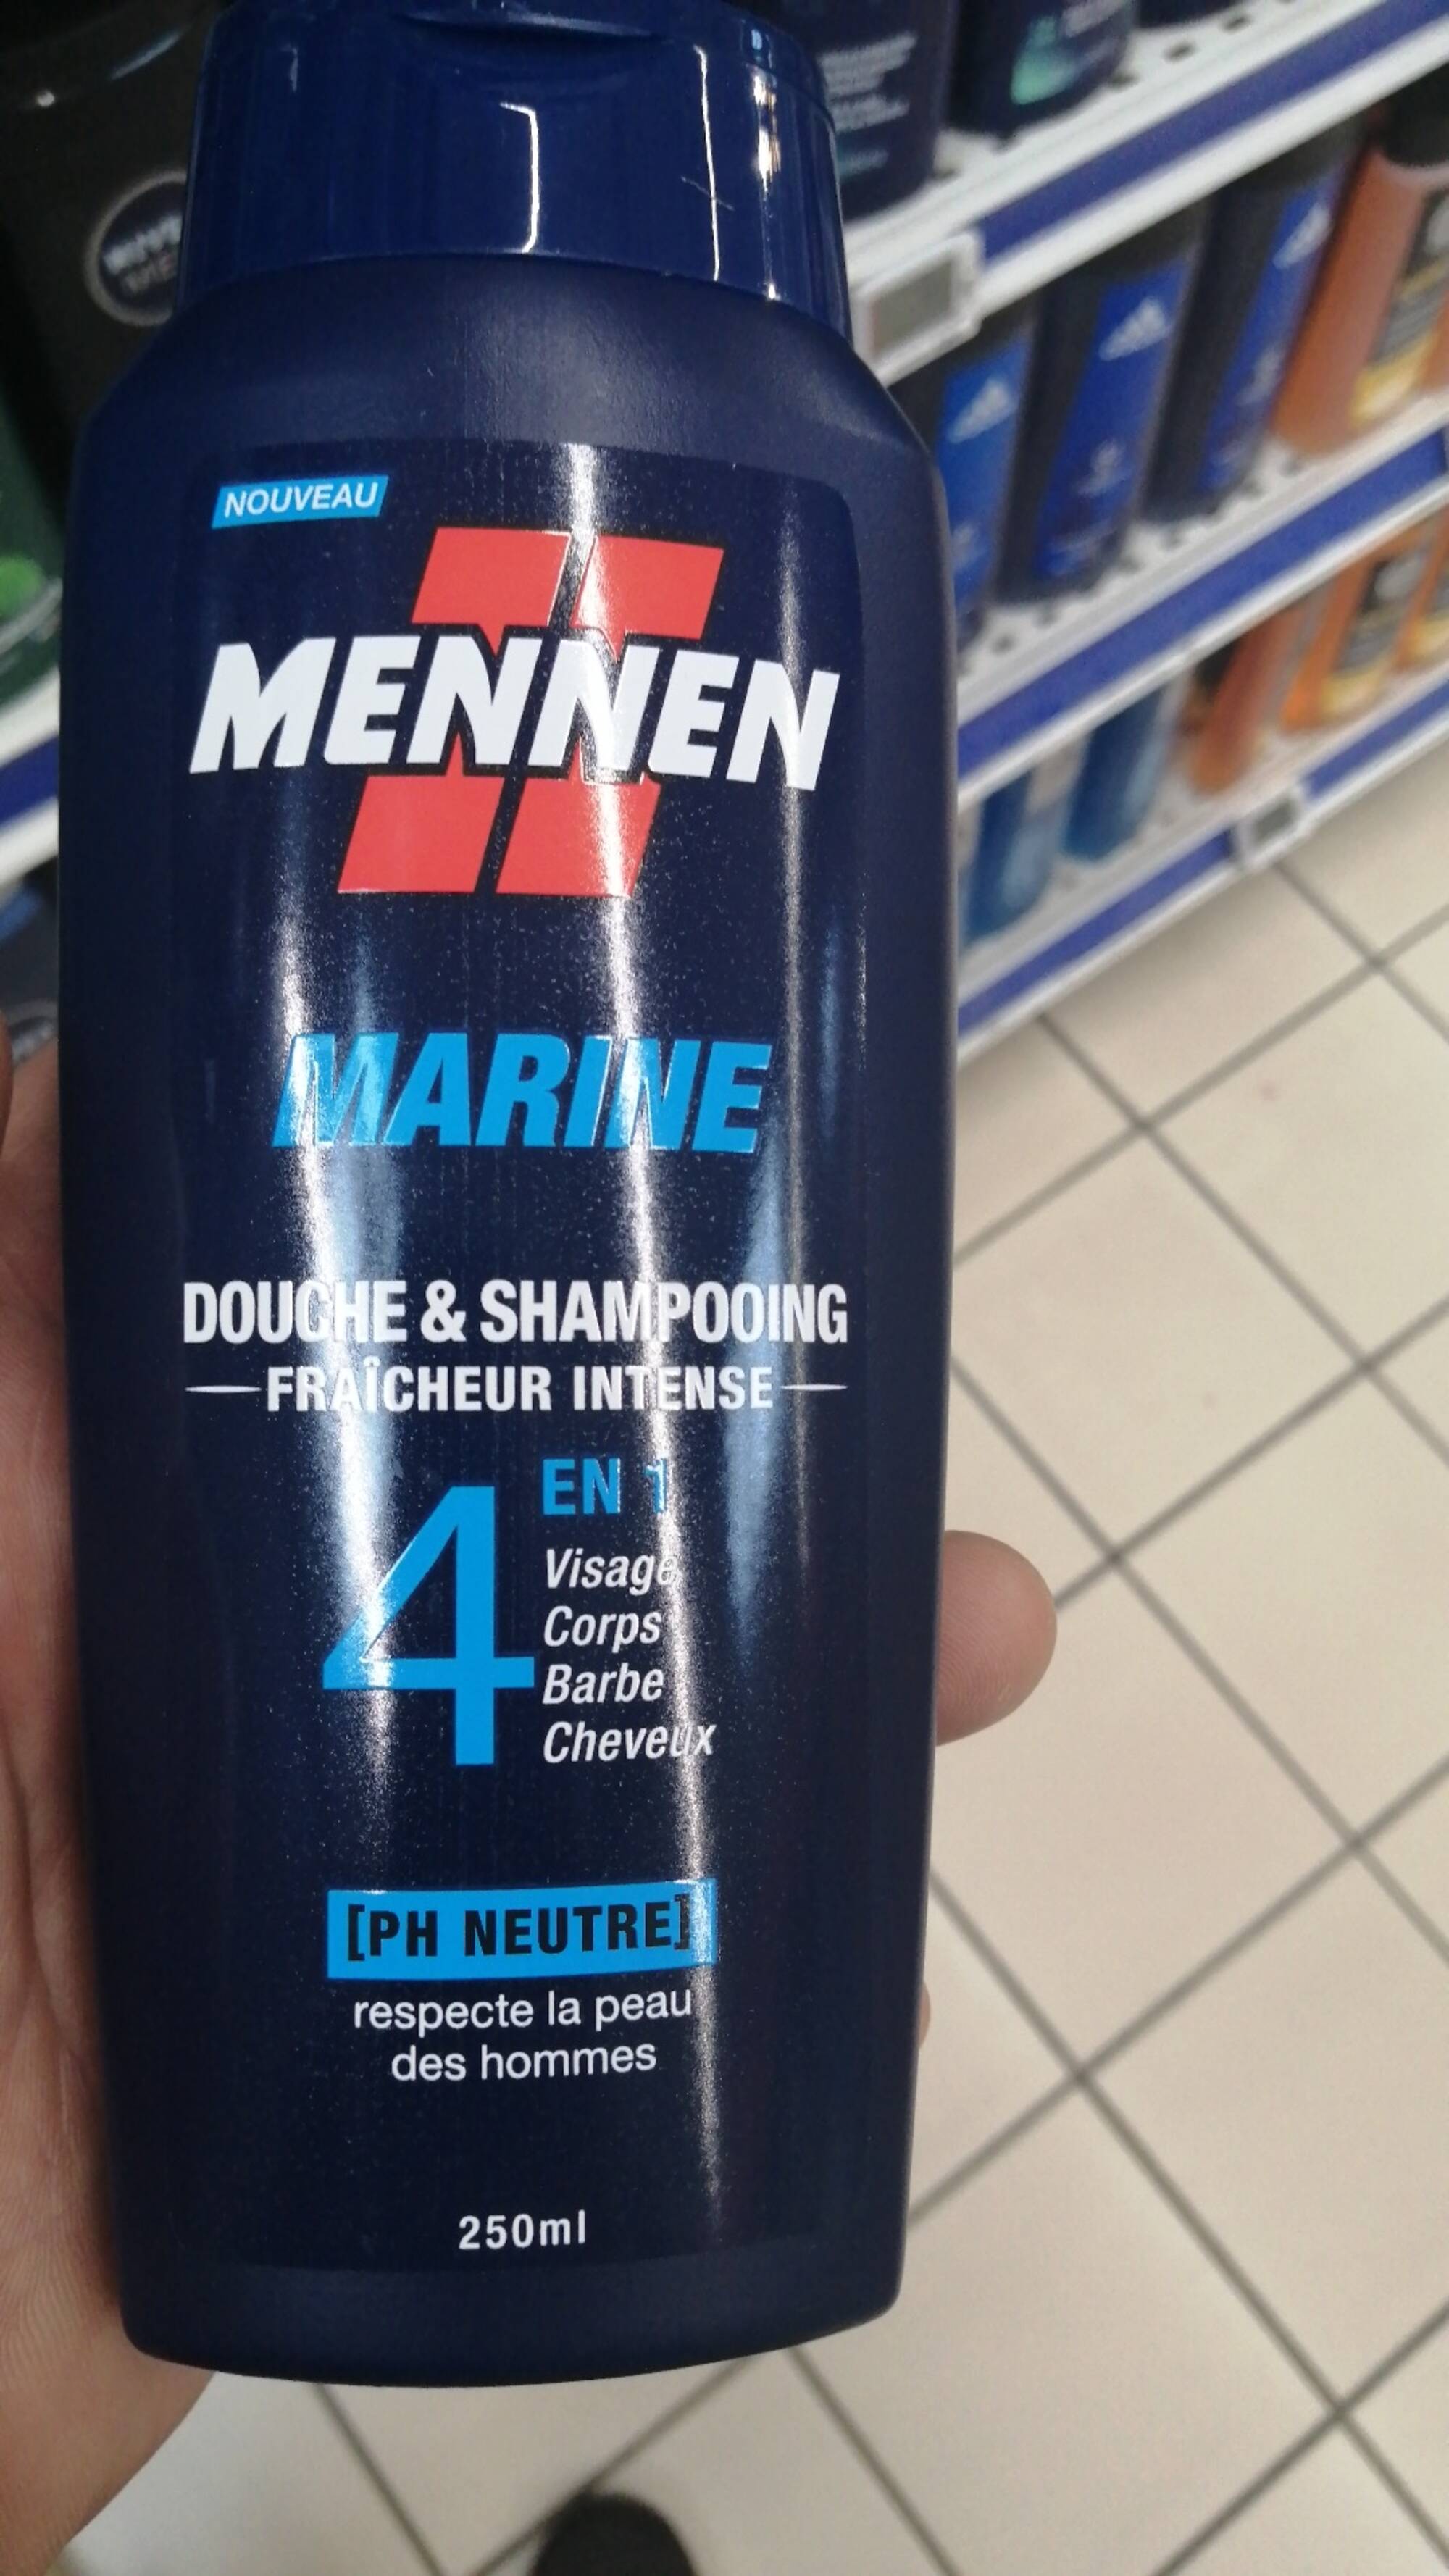 MENNEN - Marine - Douche & shampooing 4 en 1